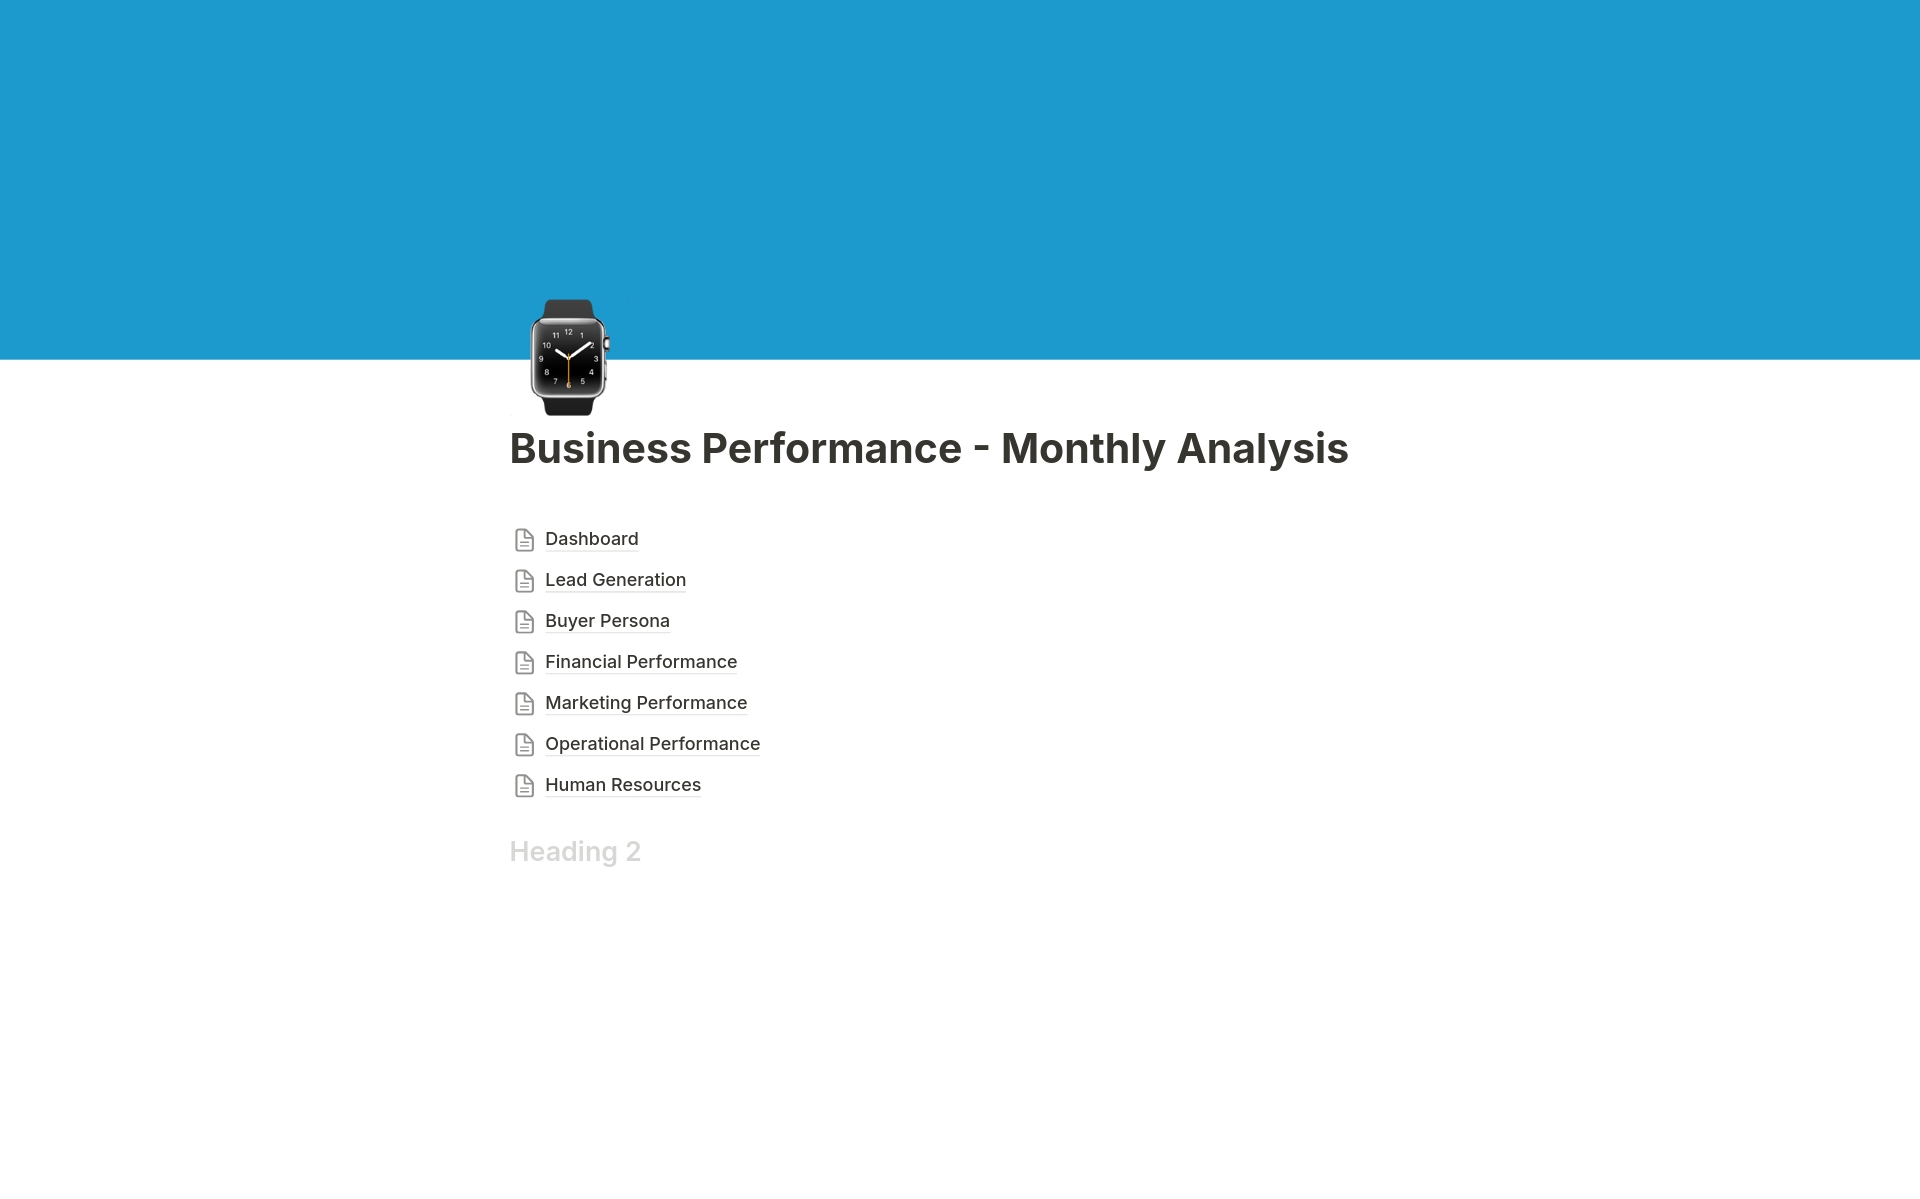 Uma prévia do modelo para Business Performance Analysis